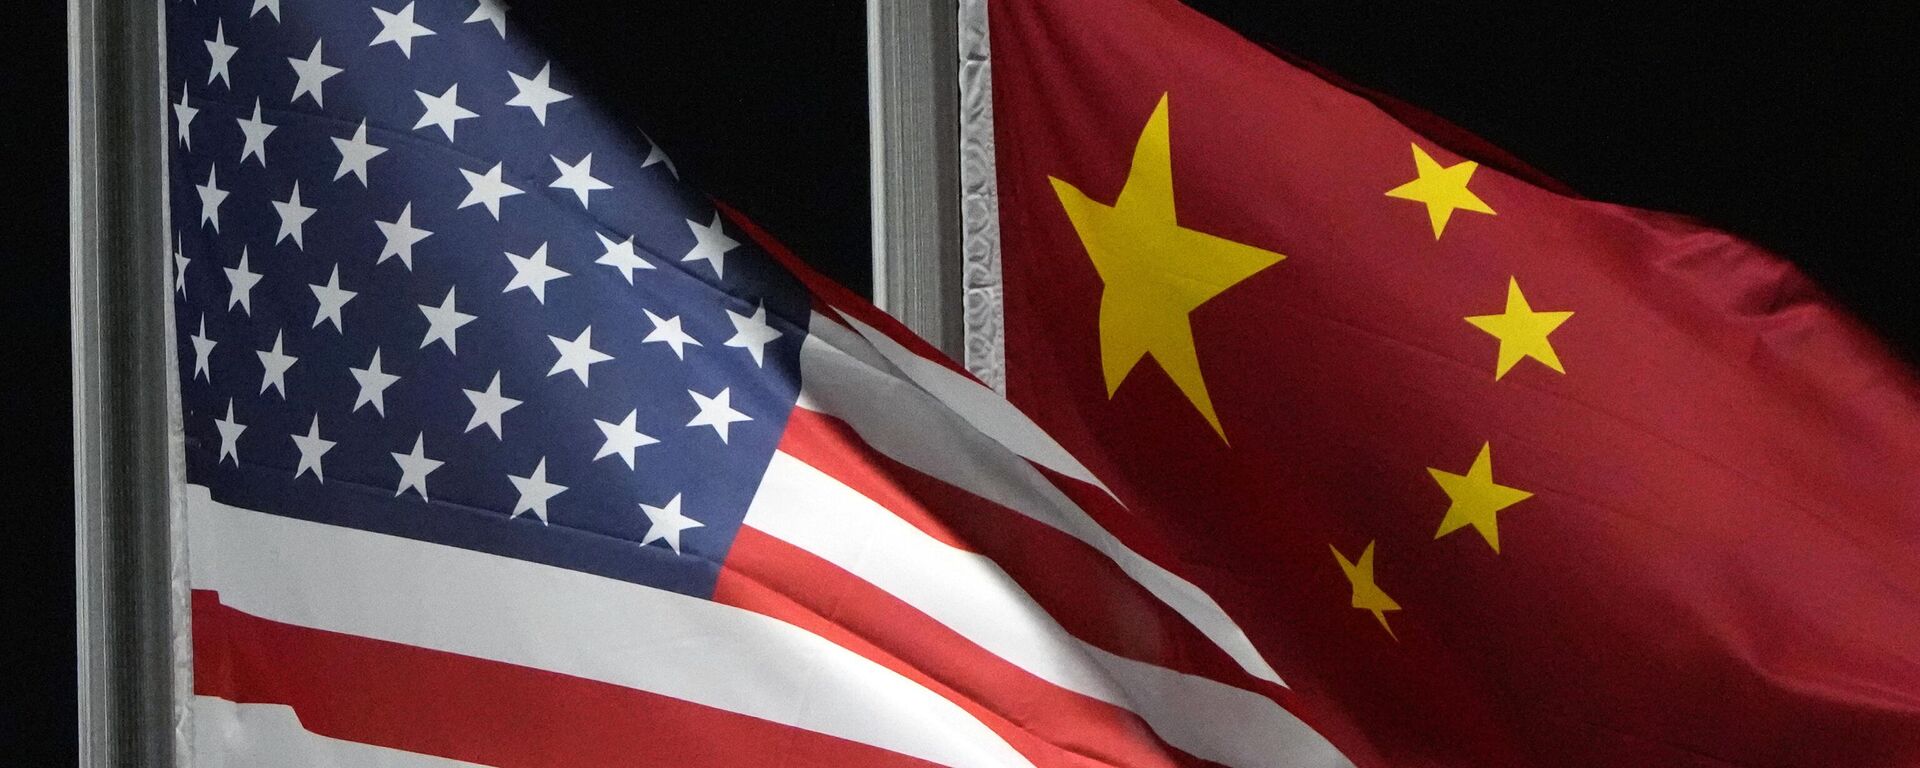 Bandeiras dos EUA e da China tremulam no parque Genting Snow, antes dos Jogos Olímpicos de Inverno de 2022. Zhangjiakou, China, 2 de fevereiro de 2022 - Sputnik Brasil, 1920, 25.10.2023